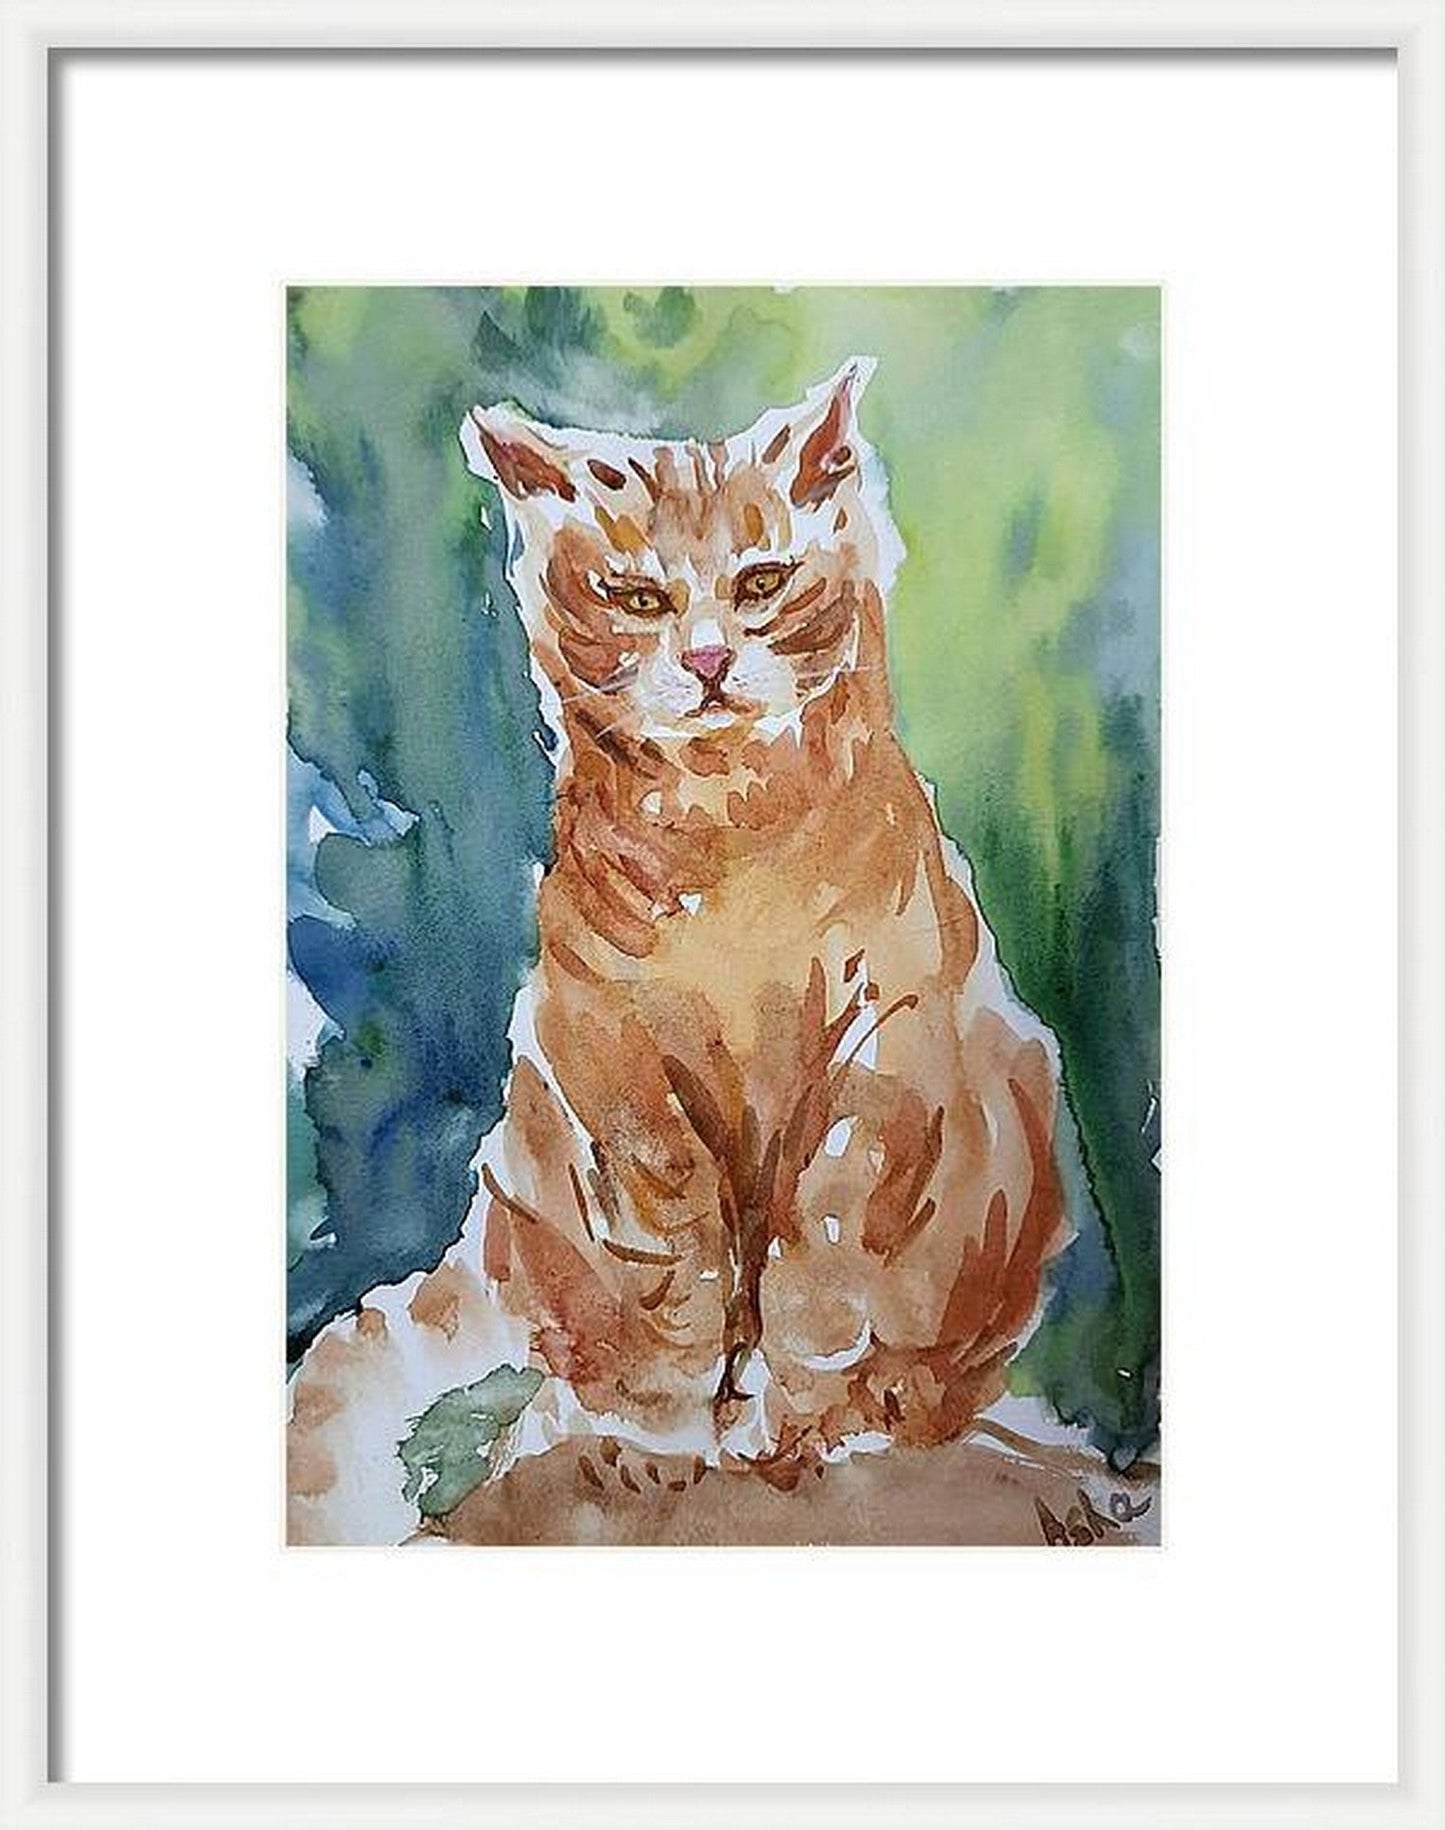 Un chat orange appelé Ranga, aquarelle sur papier